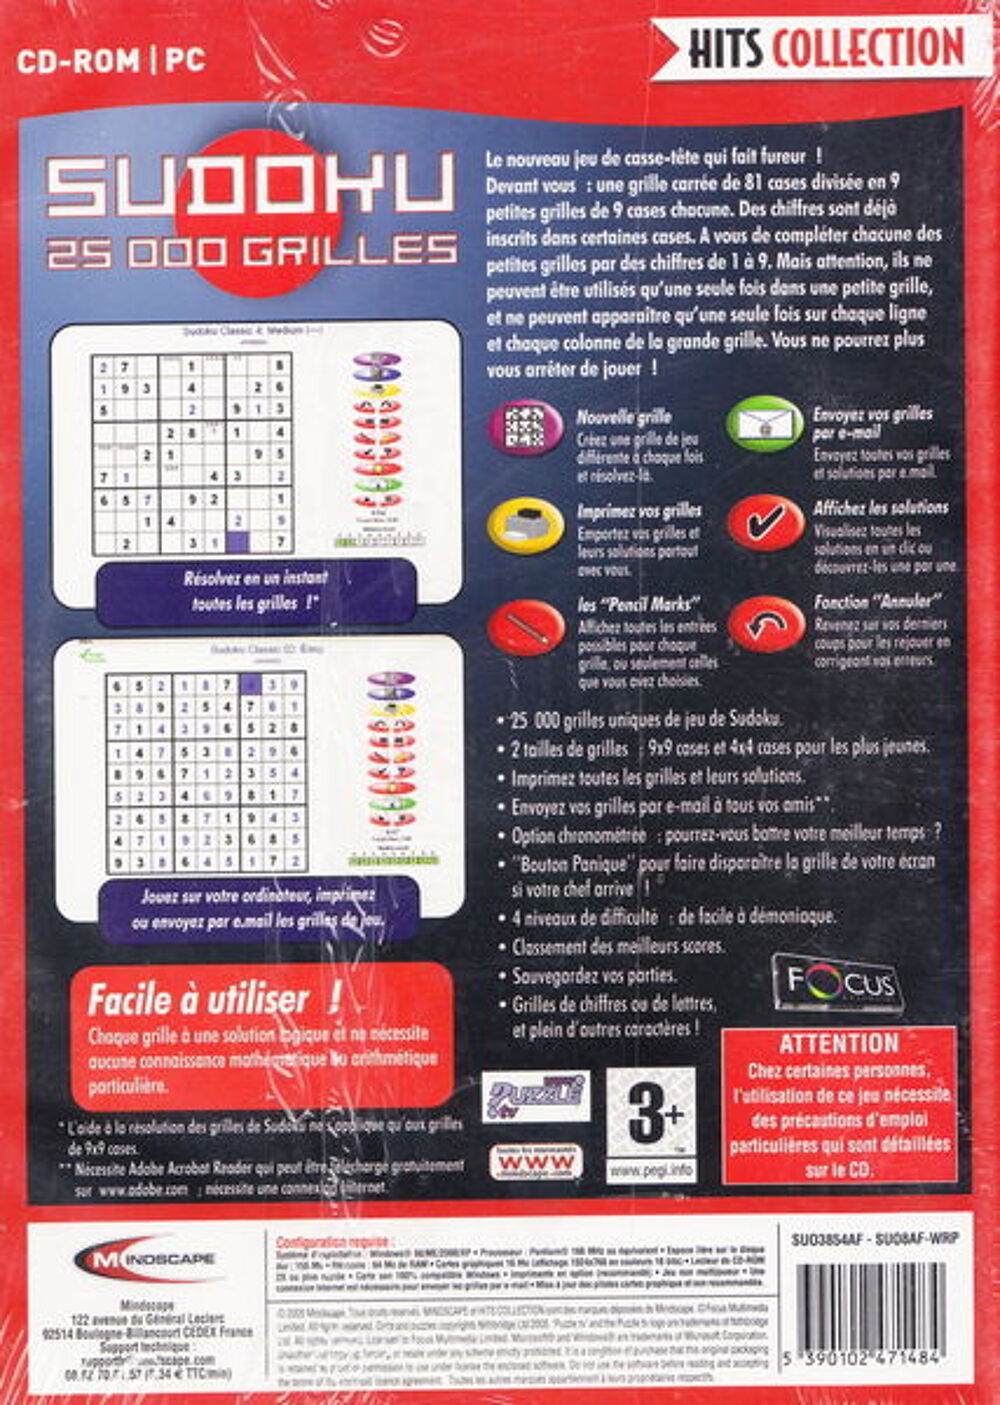 CD jeu PC Sudoku 25 000 grilles NEUF blister
Consoles et jeux vidos